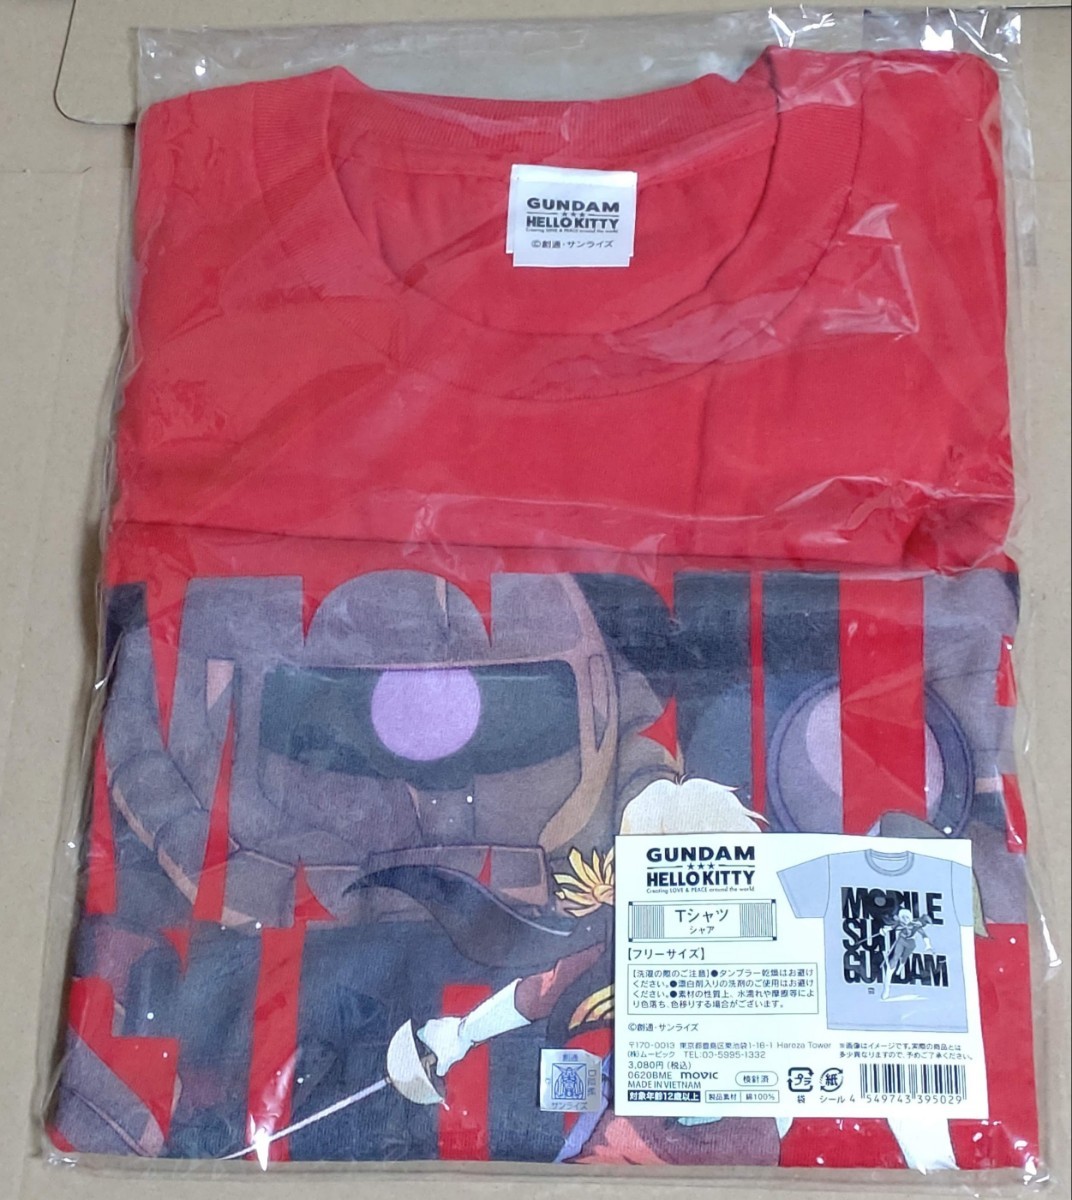 シャア・アズナブル 機動戦士ガンダムvsハローキティプロジェクト GUNDAM x HELLO KITTY Tシャツ フリーサイズ_画像1